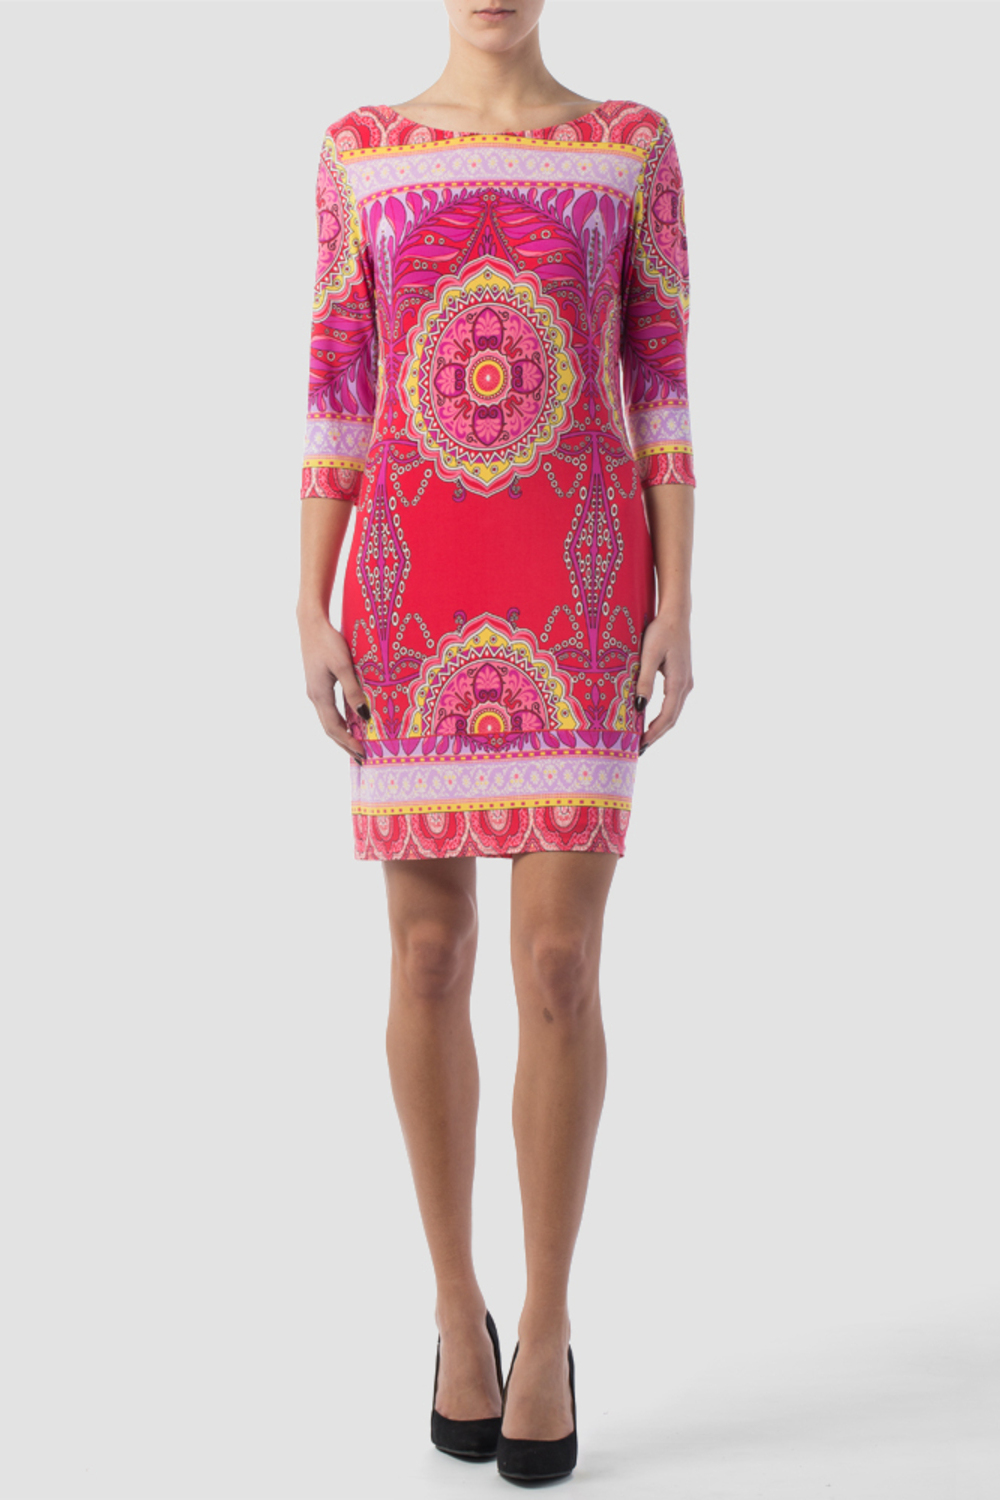 Joseph Ribkoff tunic/dress style 152725. Pink/multi